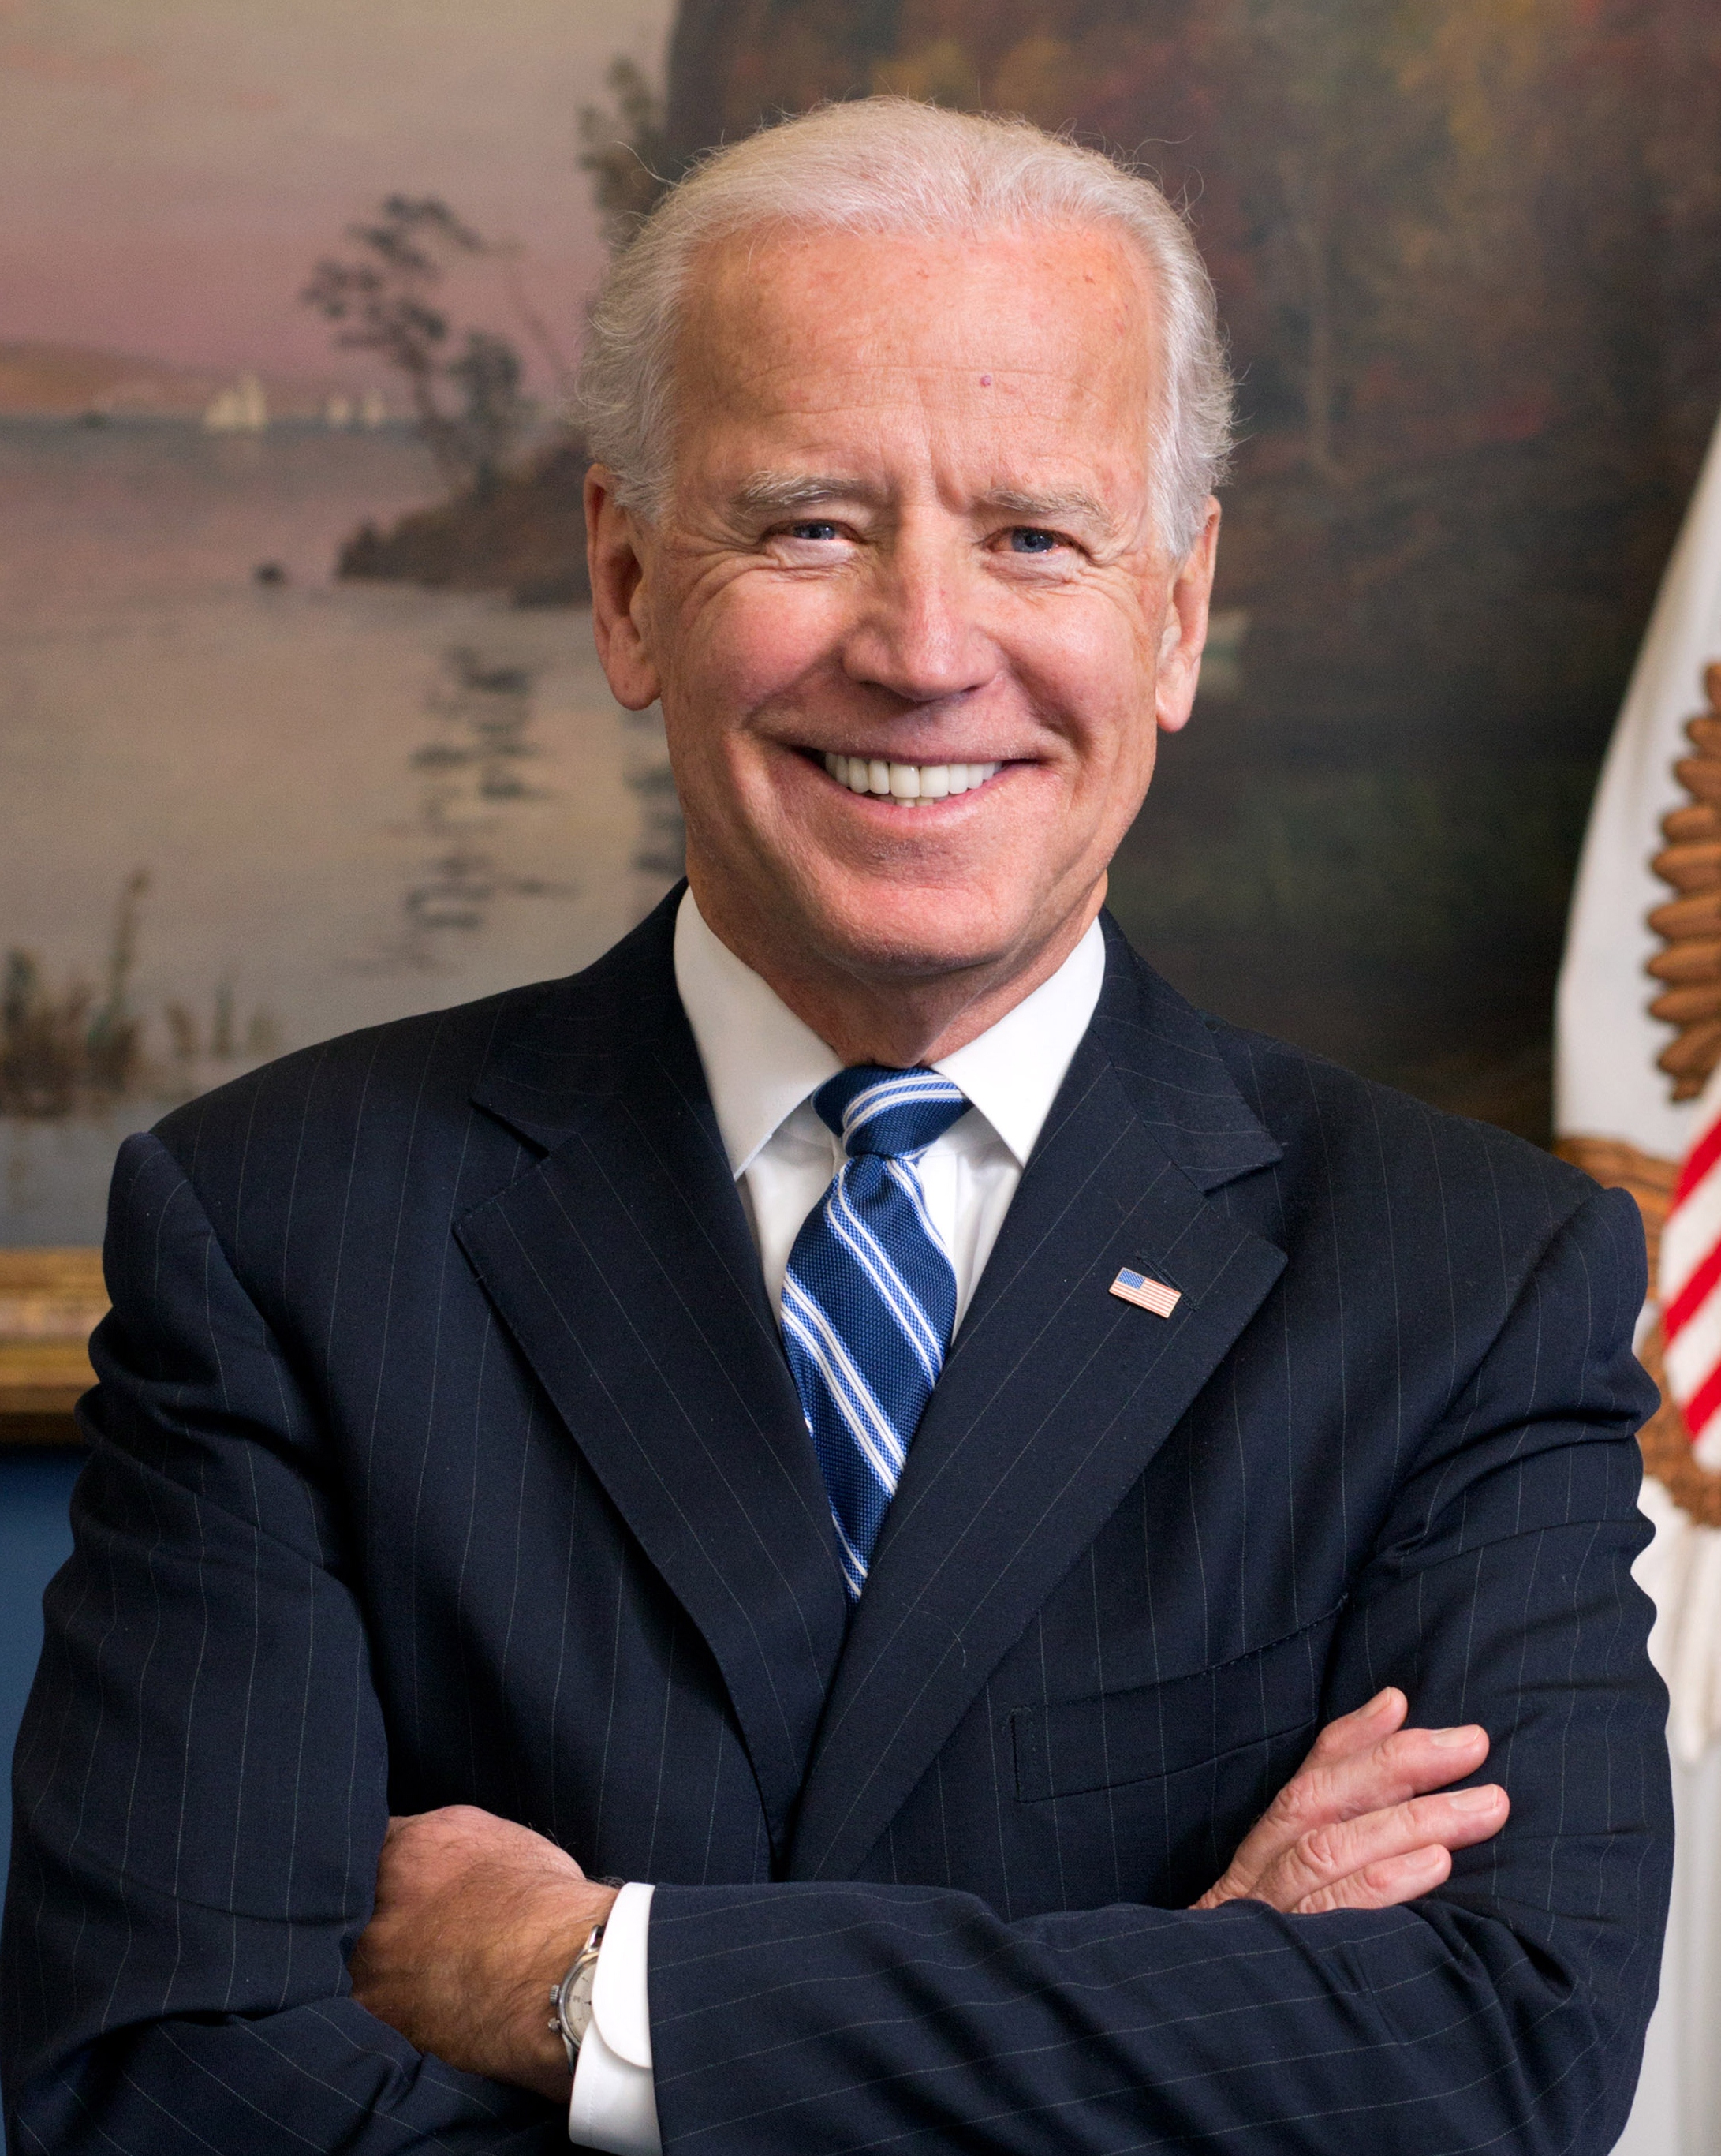 Joe_Biden_official_portrait_2013_cropped.jpg